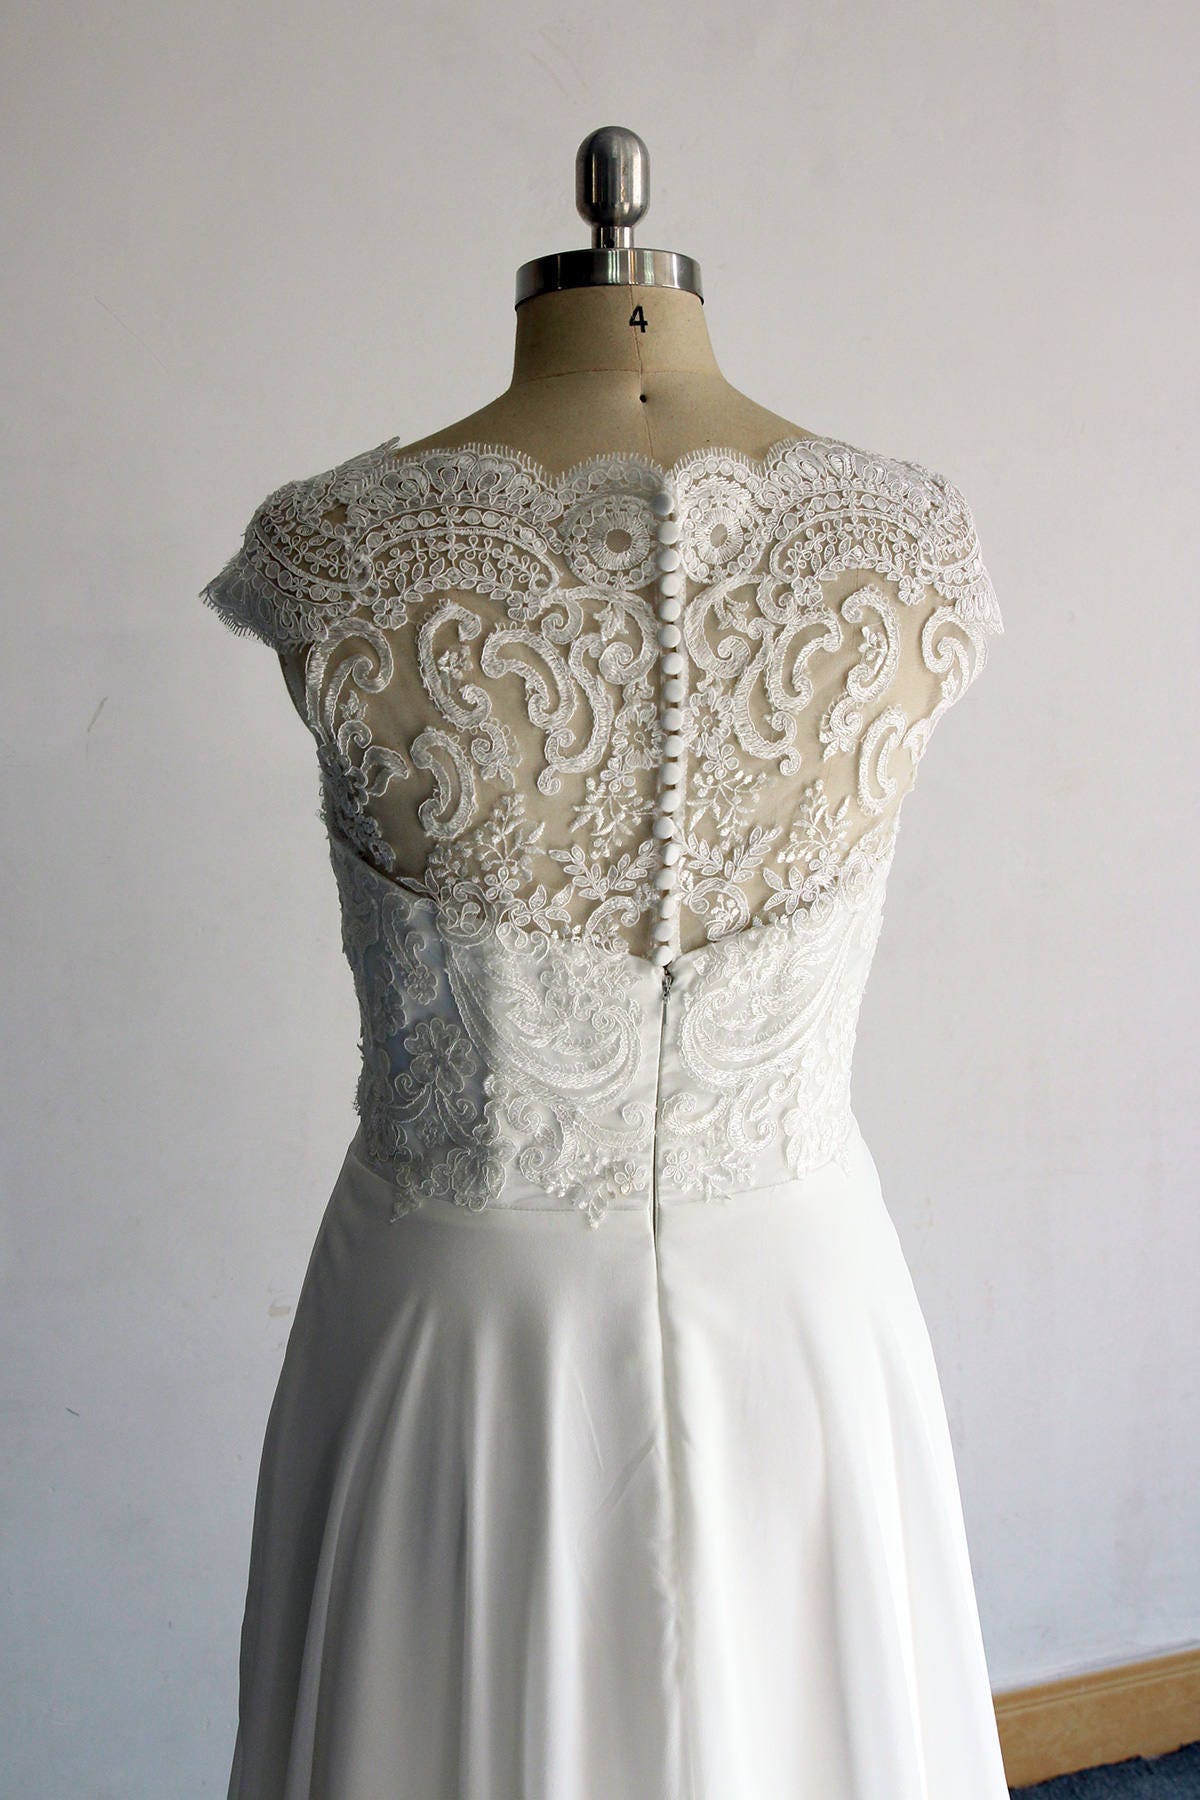 Romantic Ivory Aline Chiffon Lace Wedding Dress Boho Wedding | Etsy